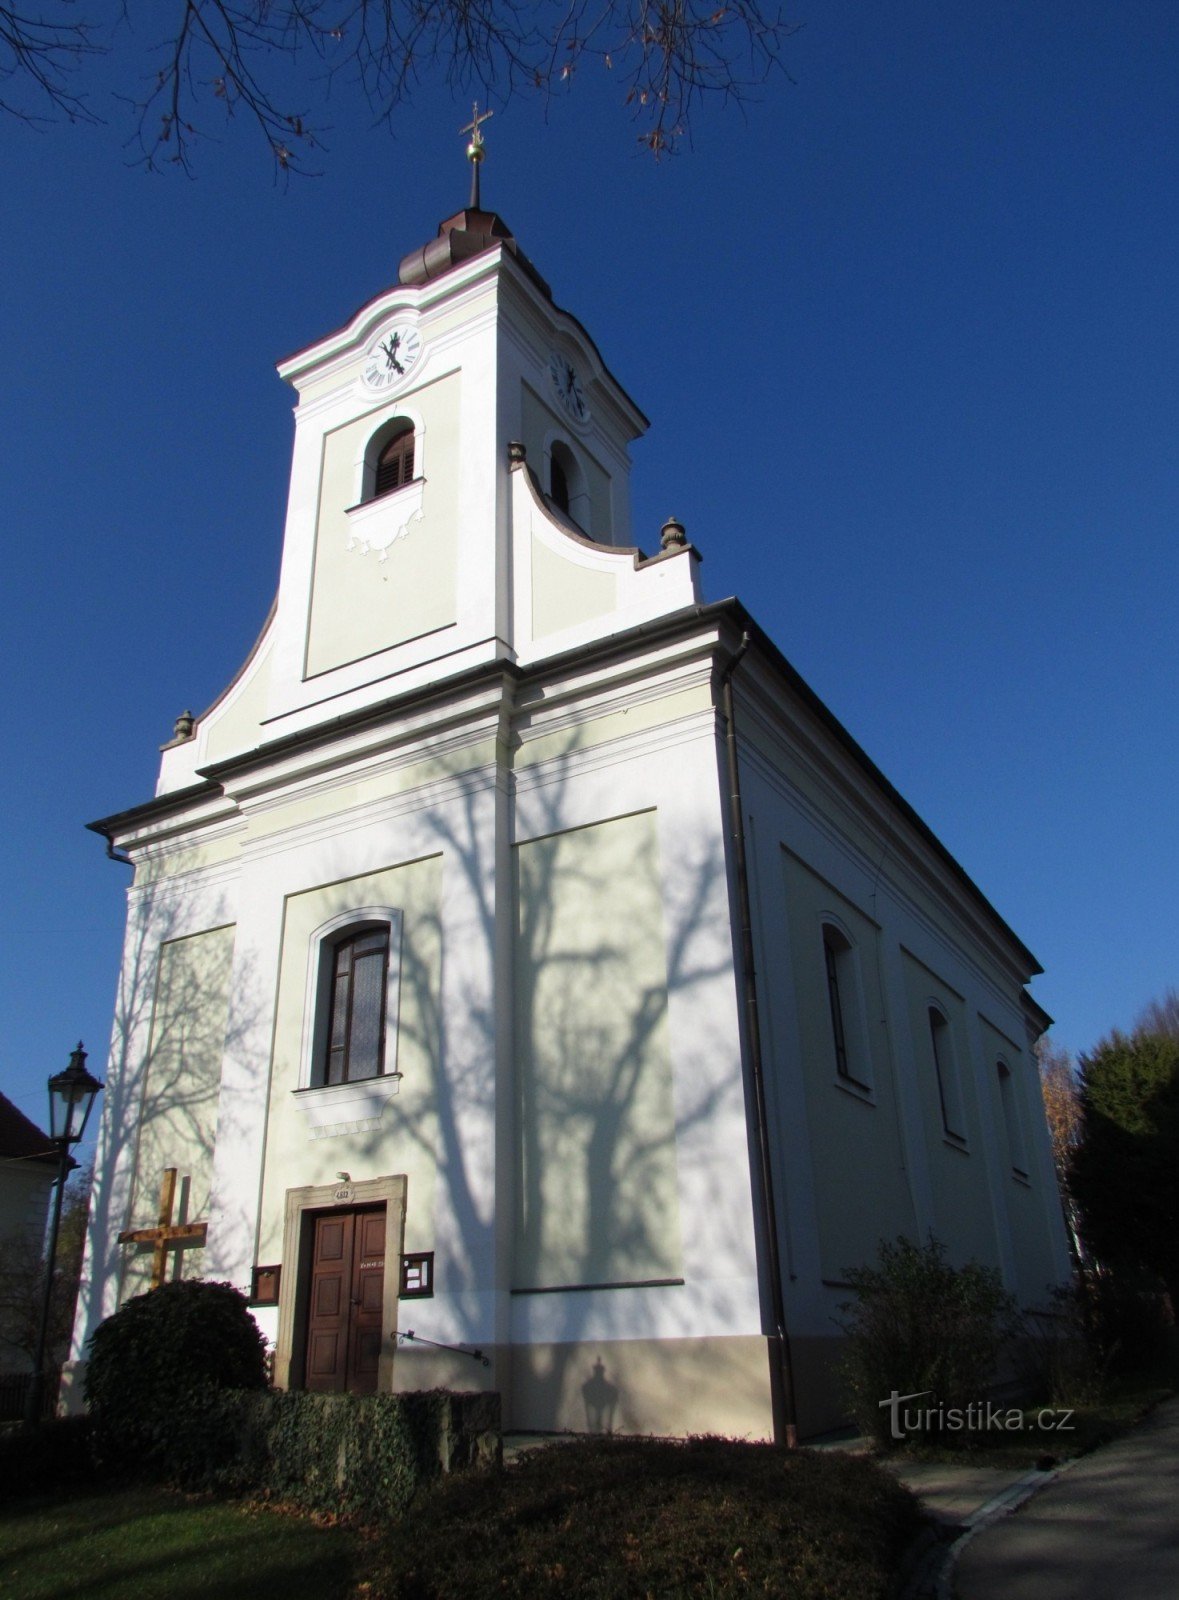 Церковь Святого Иосифа и дом приходского священника в Лукове